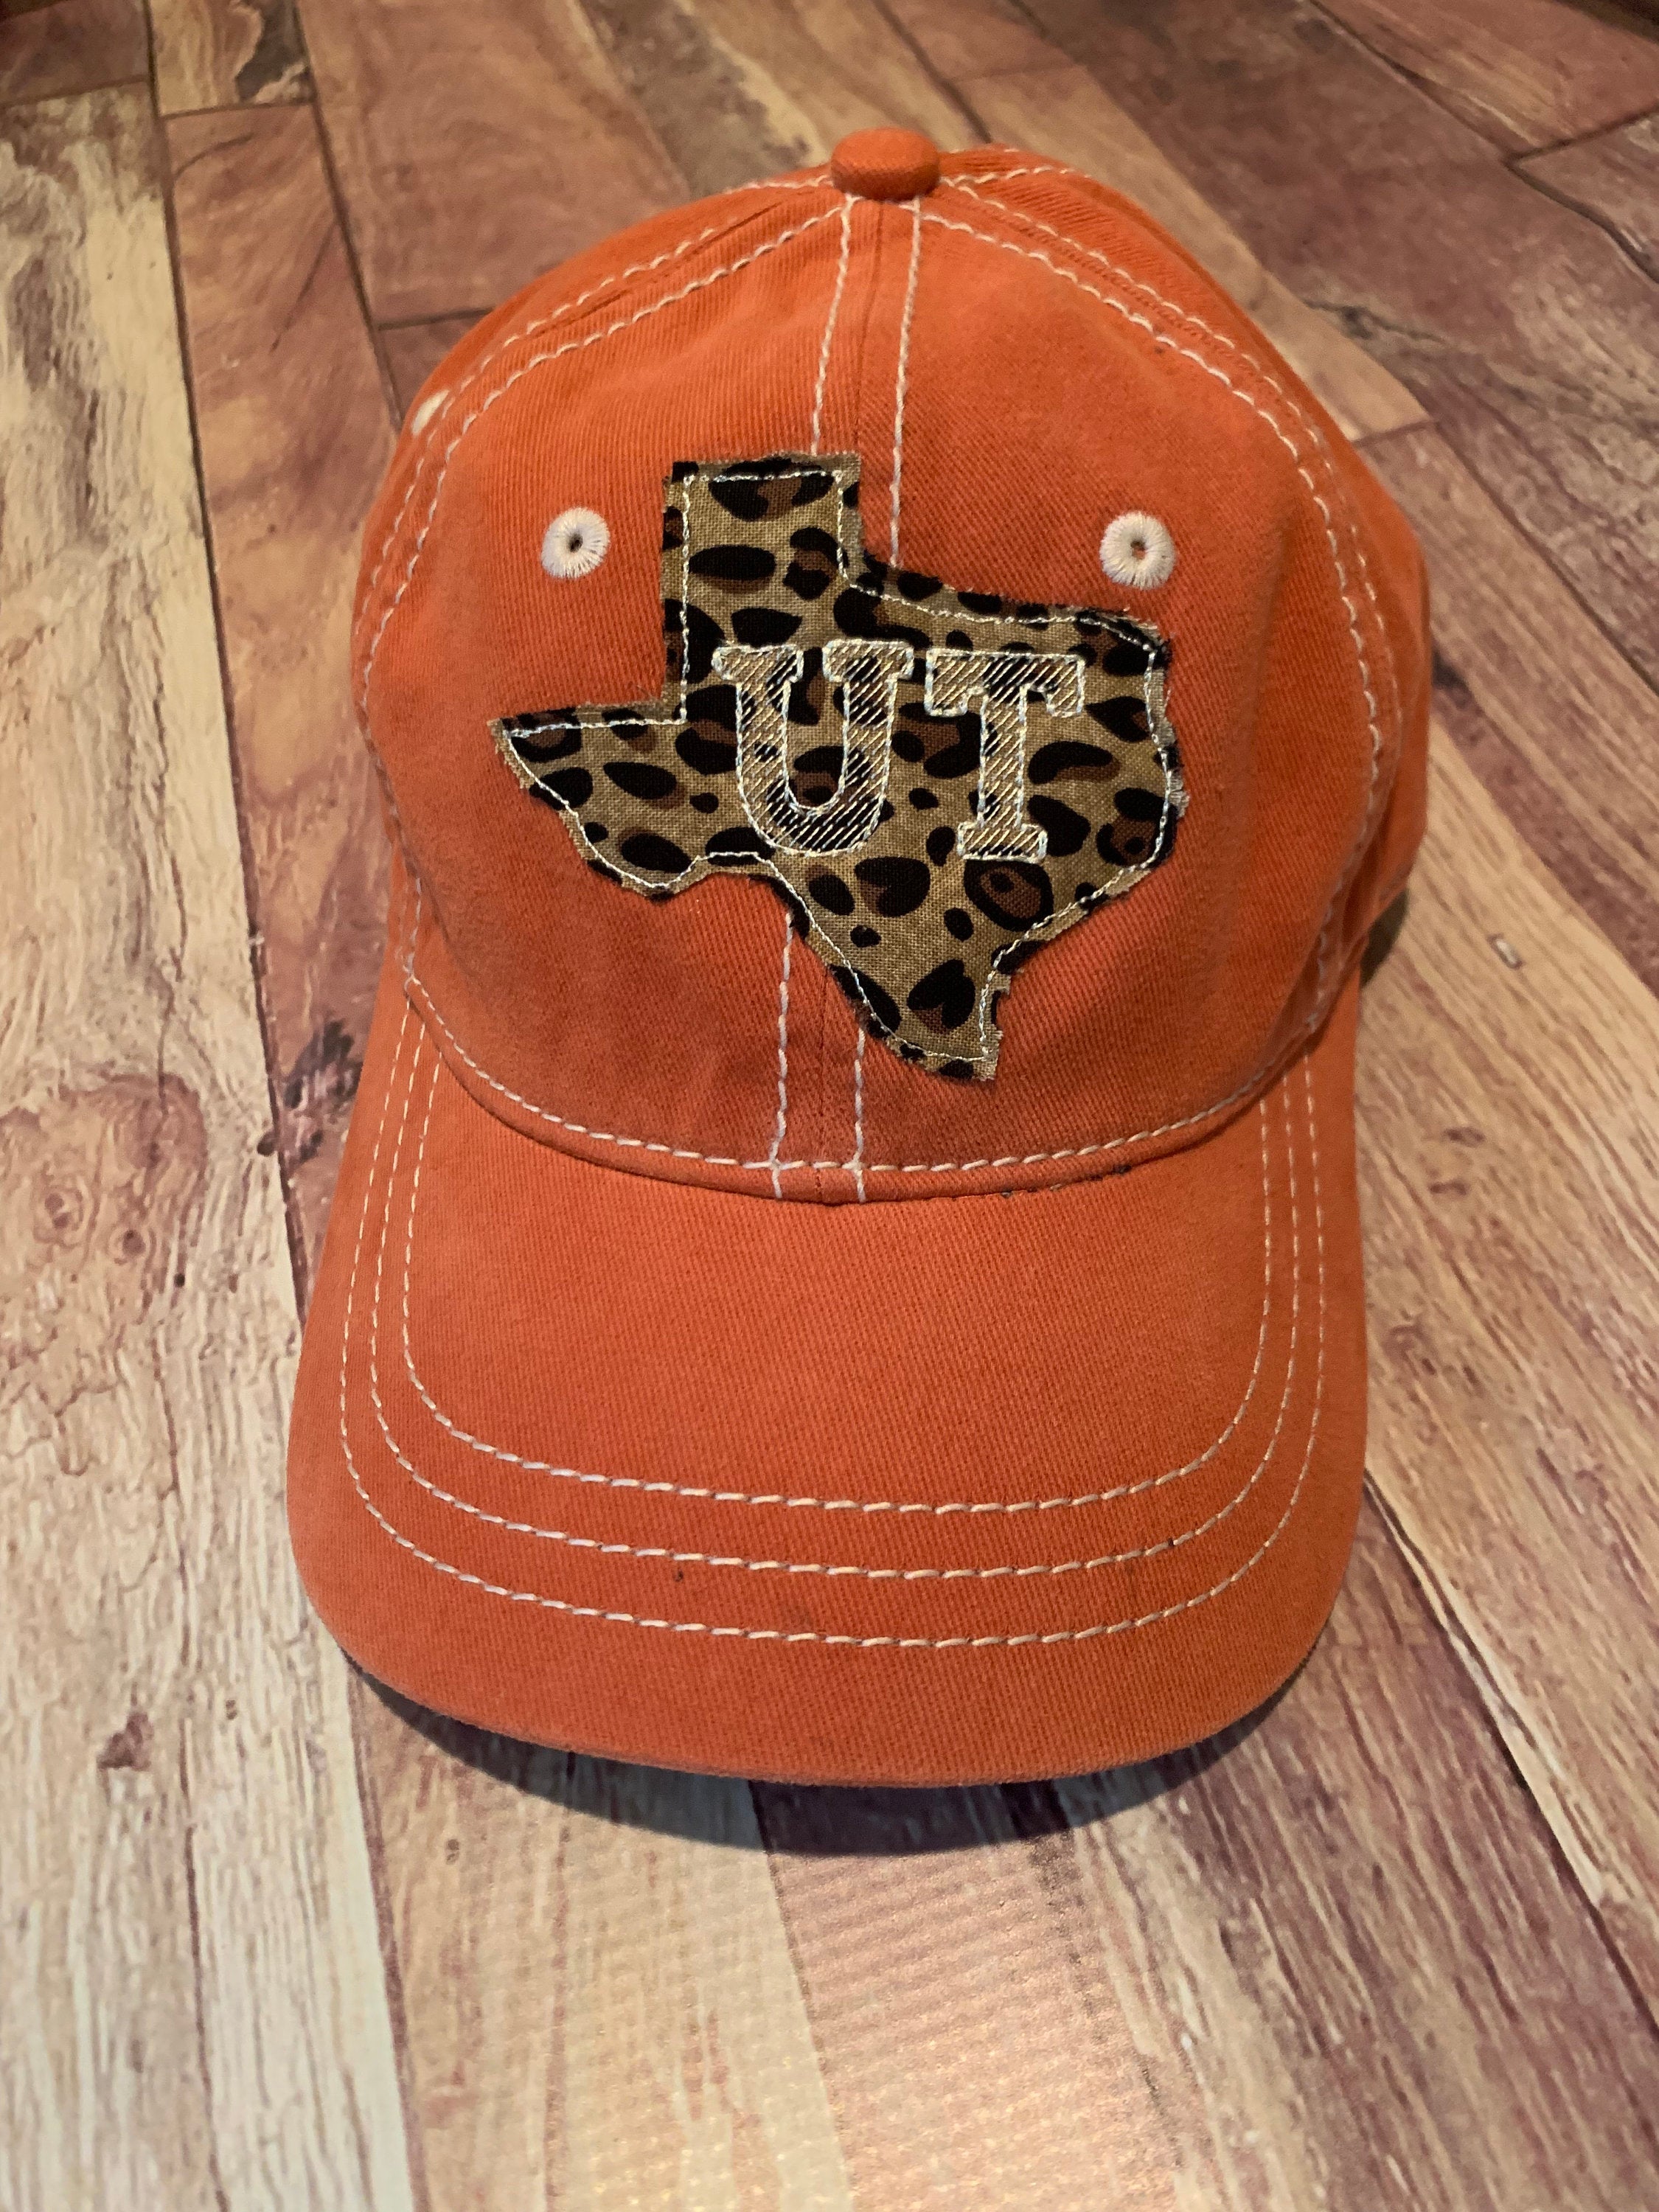 Leopard UT Texas Sewn Applique Hat - Sassy Threadz